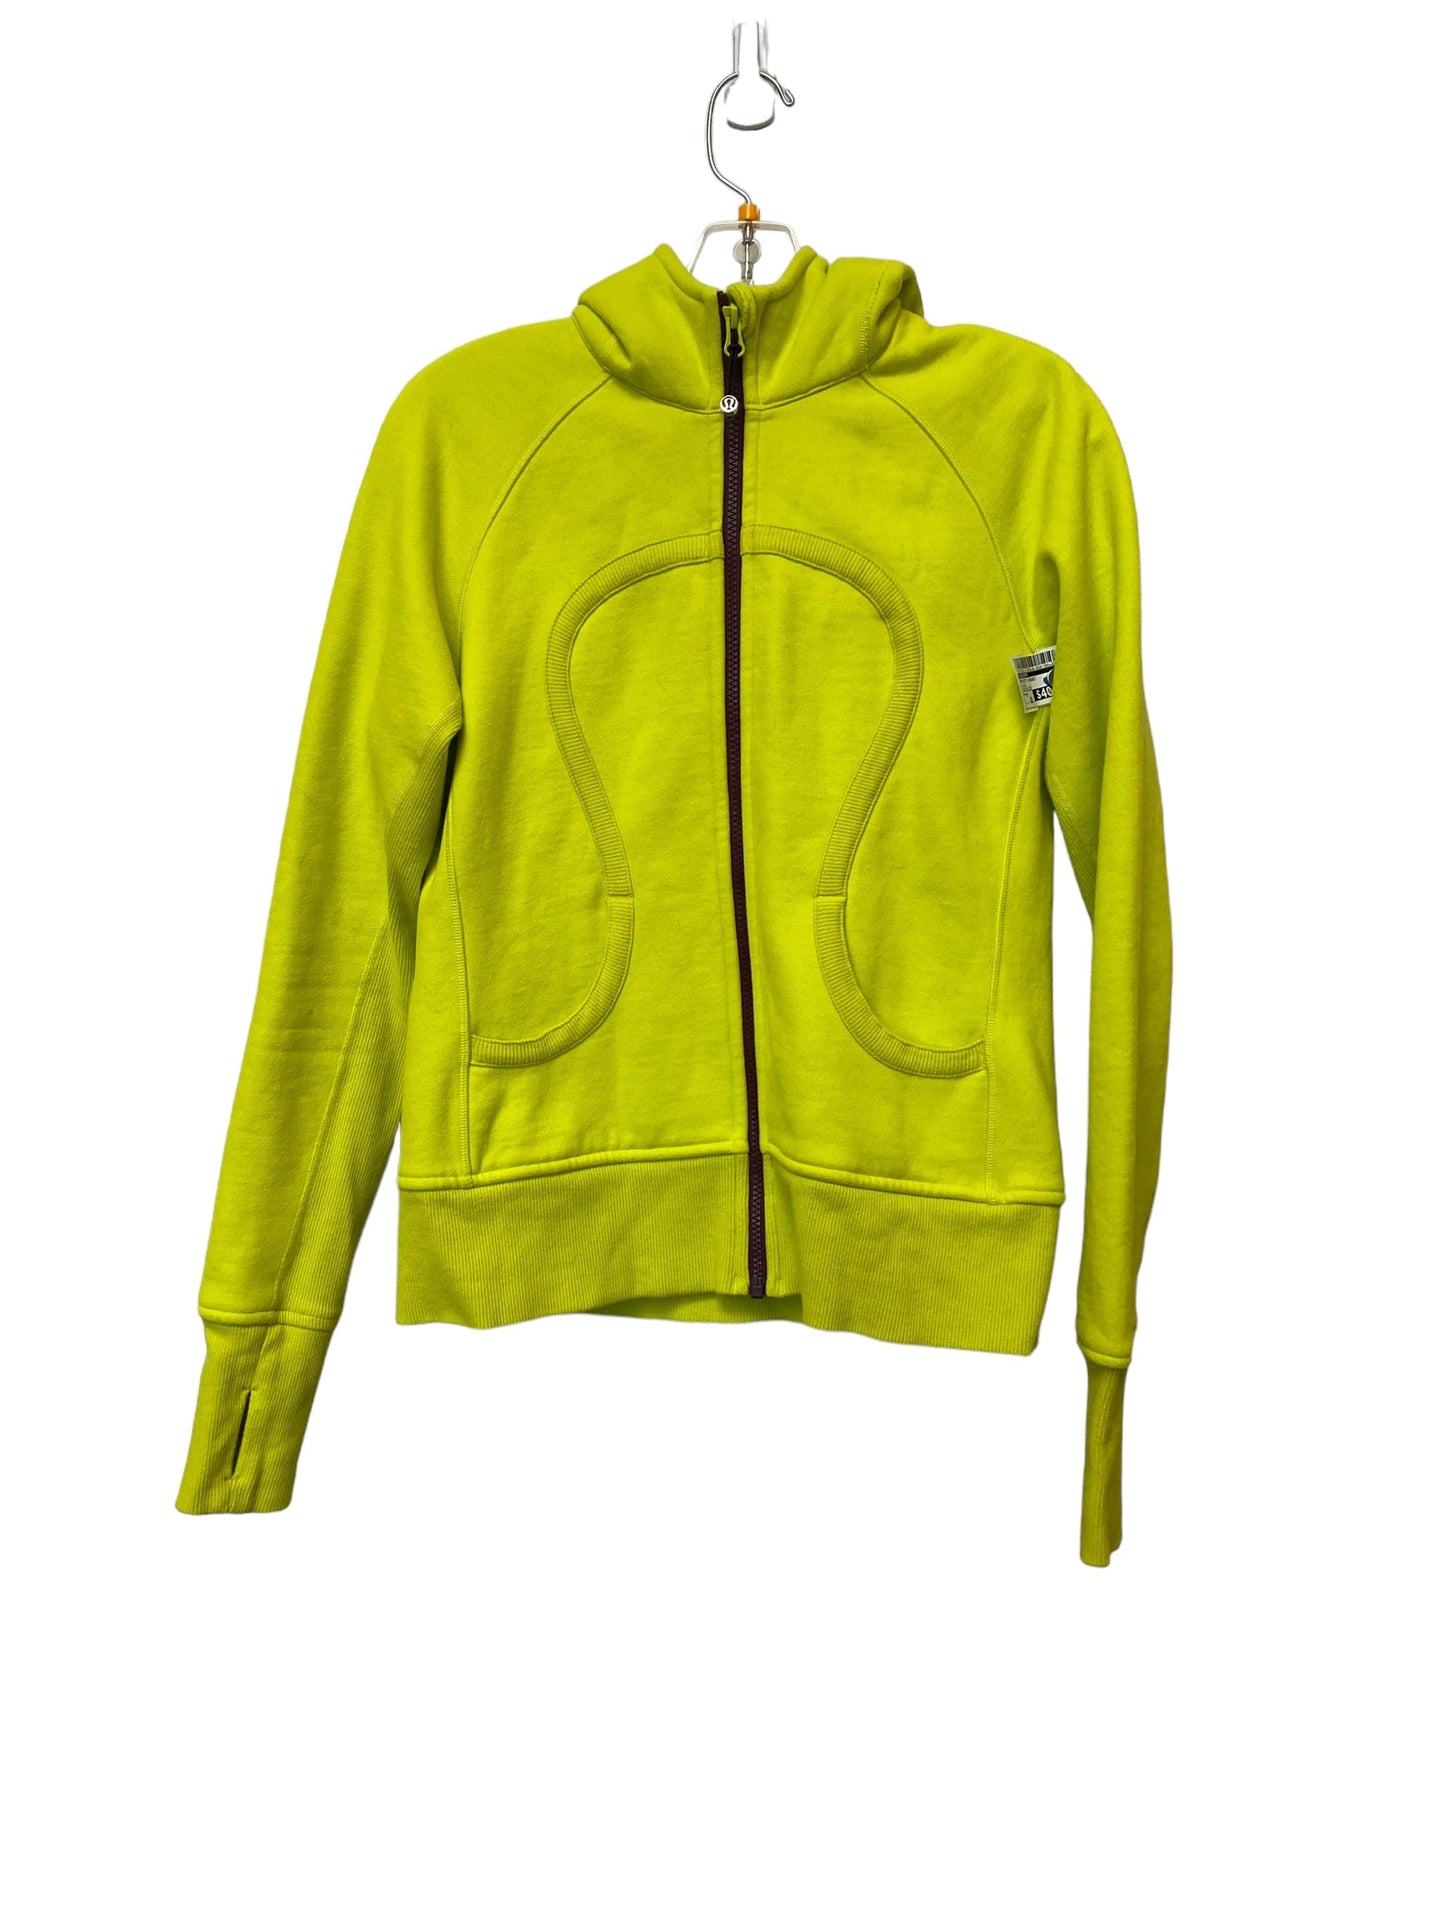 Yellow Athletic Jacket Lululemon, Size M